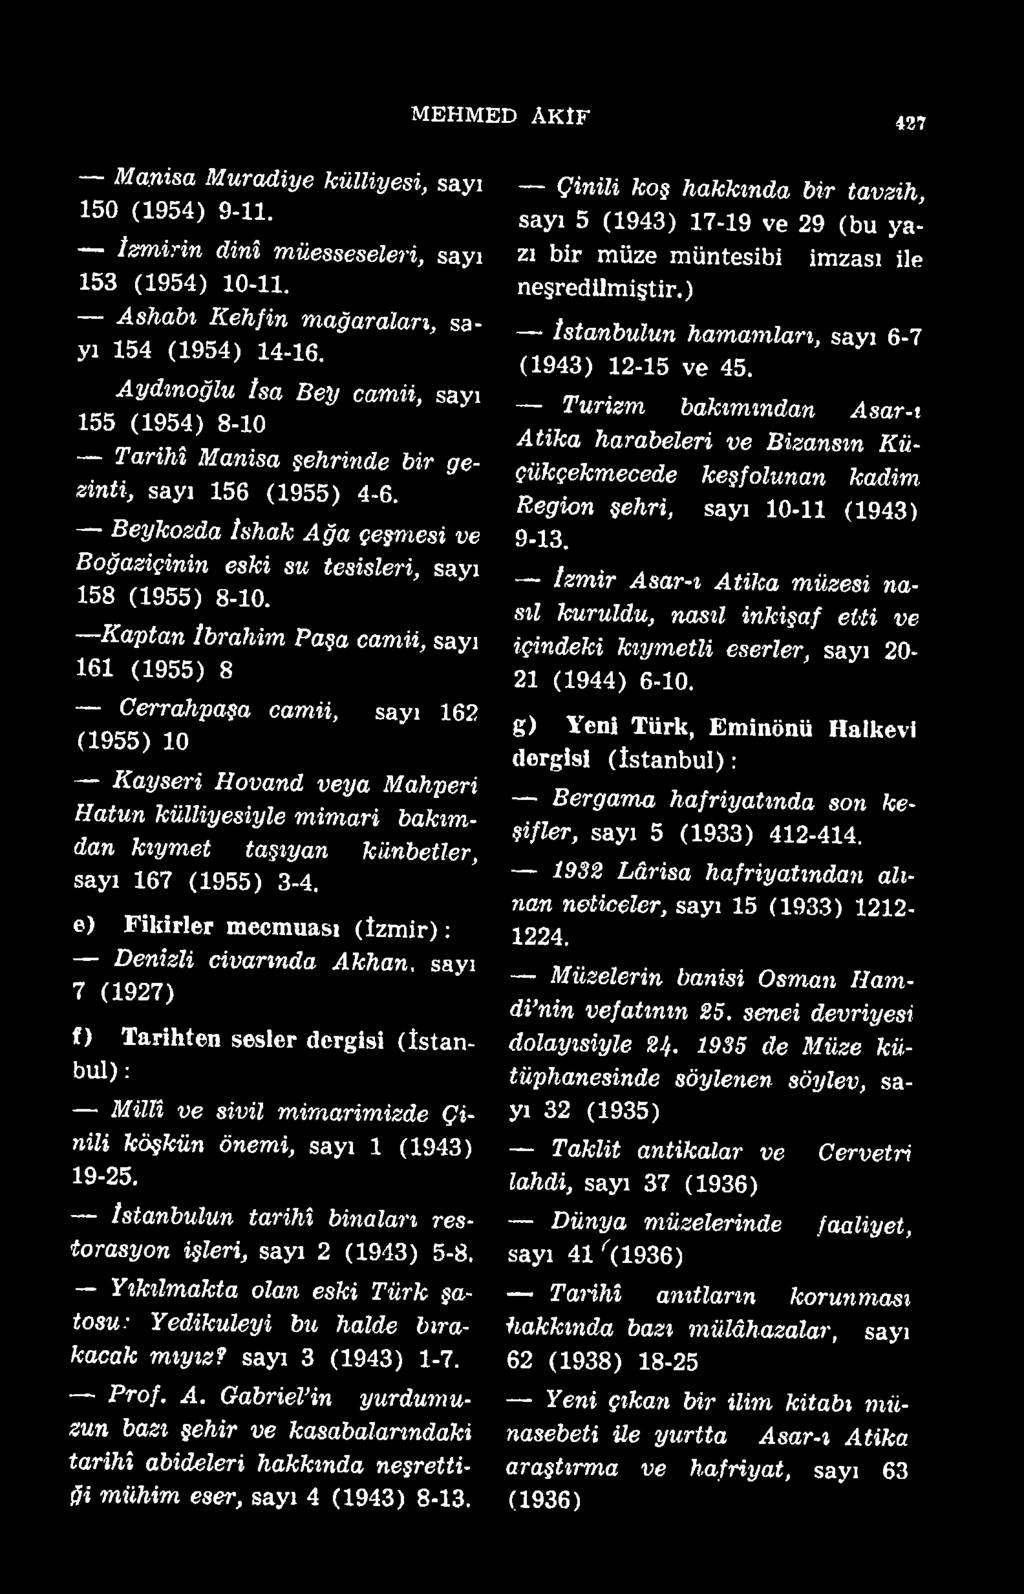 Istanbulun tarihî binaları restorasyon işleri, sayı 2 (1943) 5-8. Yıkılmakta olan eski Türk şatosu: Yedikuleyi bu halde bırakacak mıyız? sayı 3 (1943) 1-7. Prof. A.